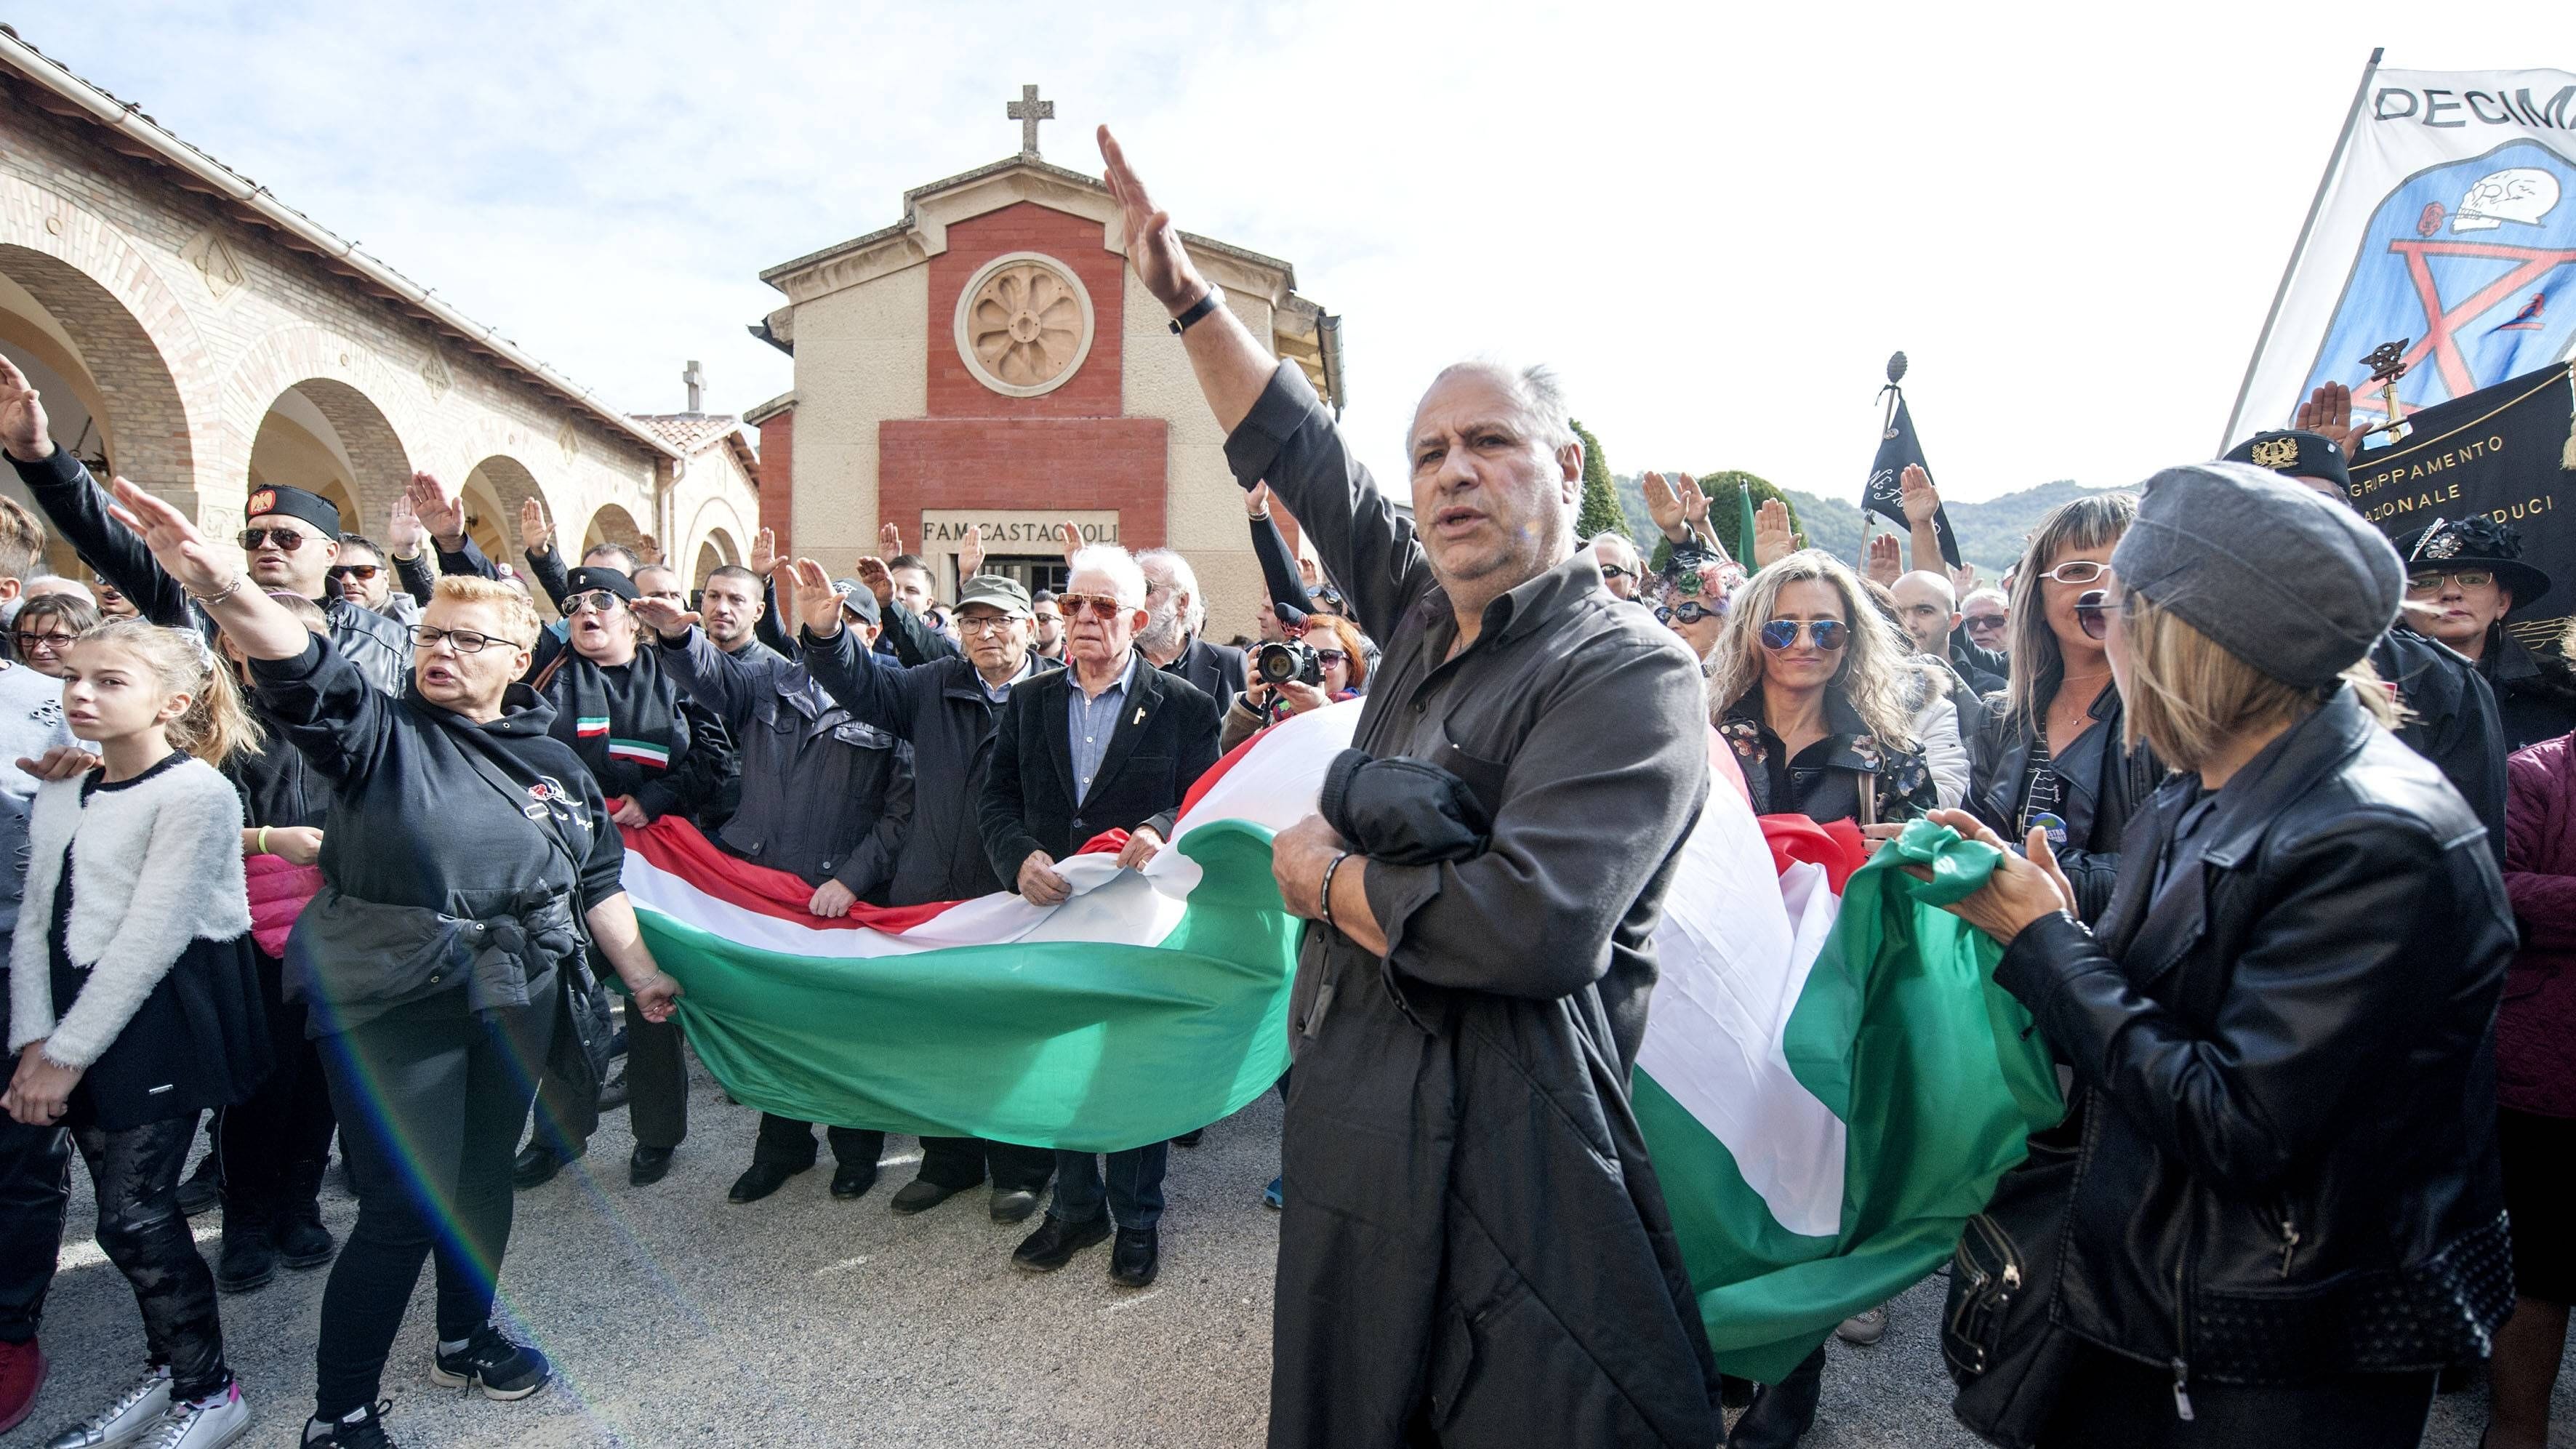 Faschistengruß in Italien laut Gerichtsurteil erlaubt